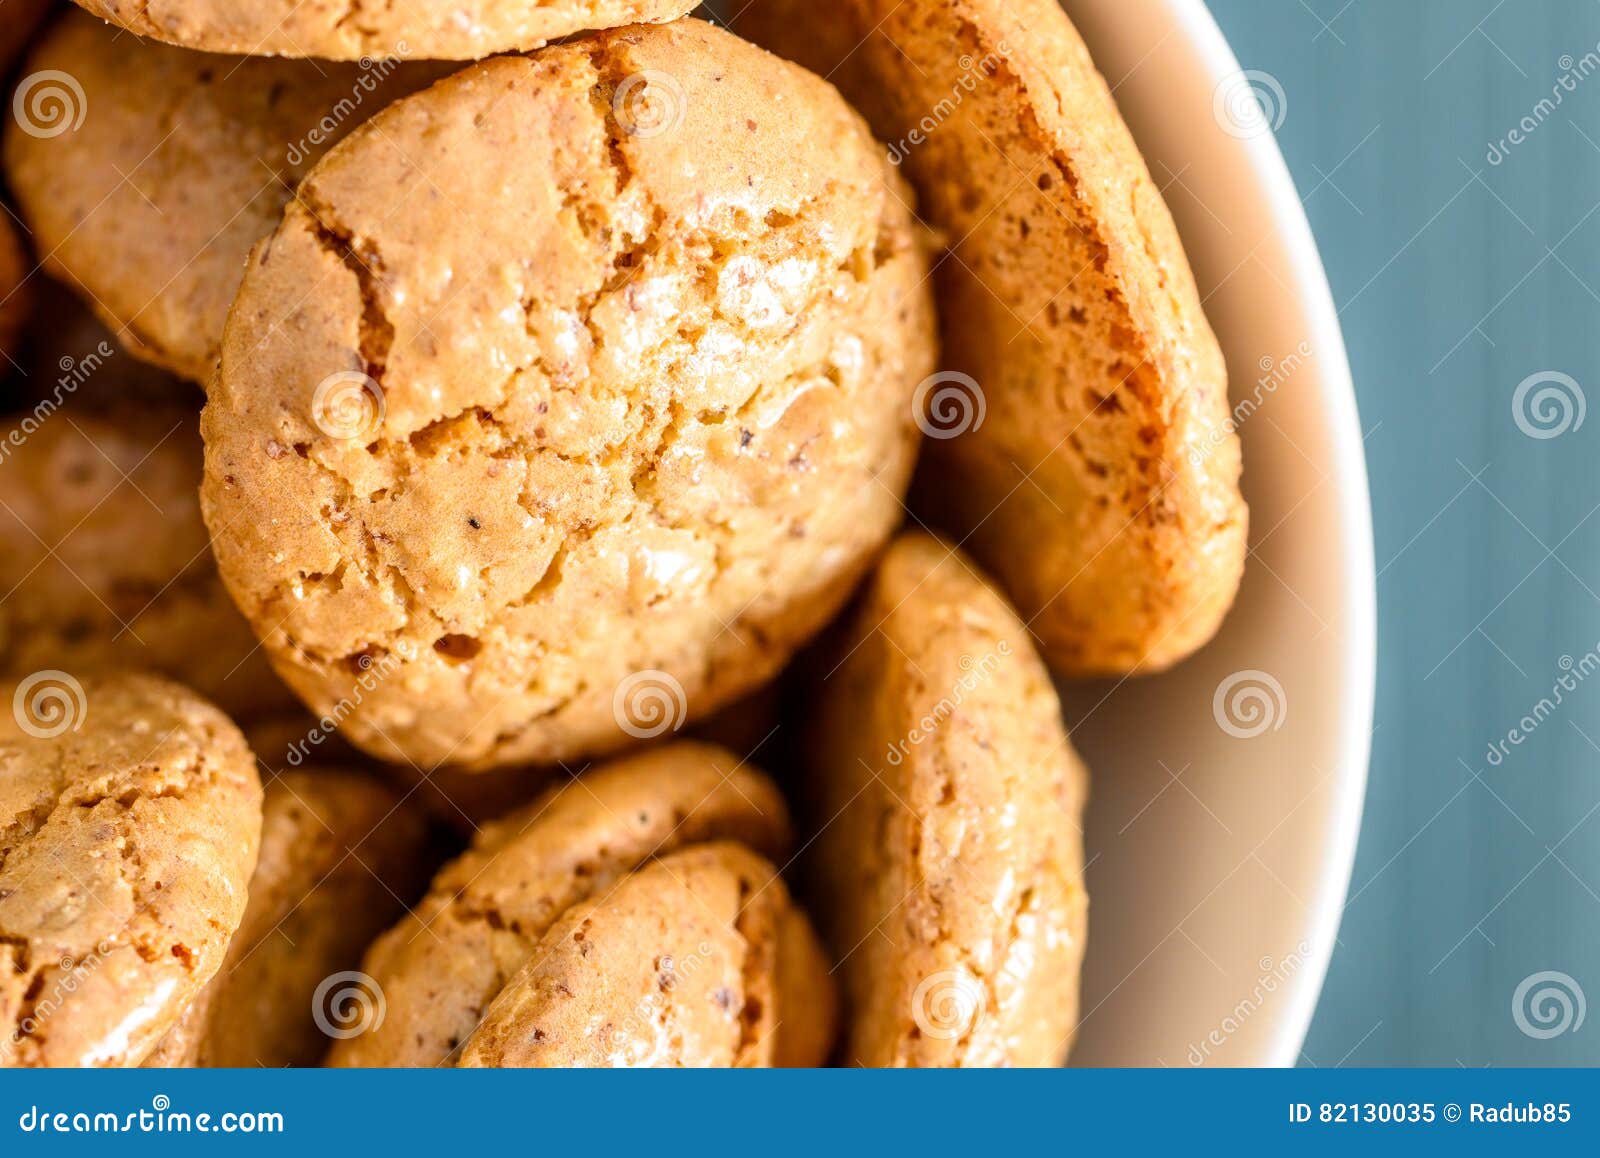 Italienische Amaretti Kekse Stockbild - Bild von italienisch, biskuite ...